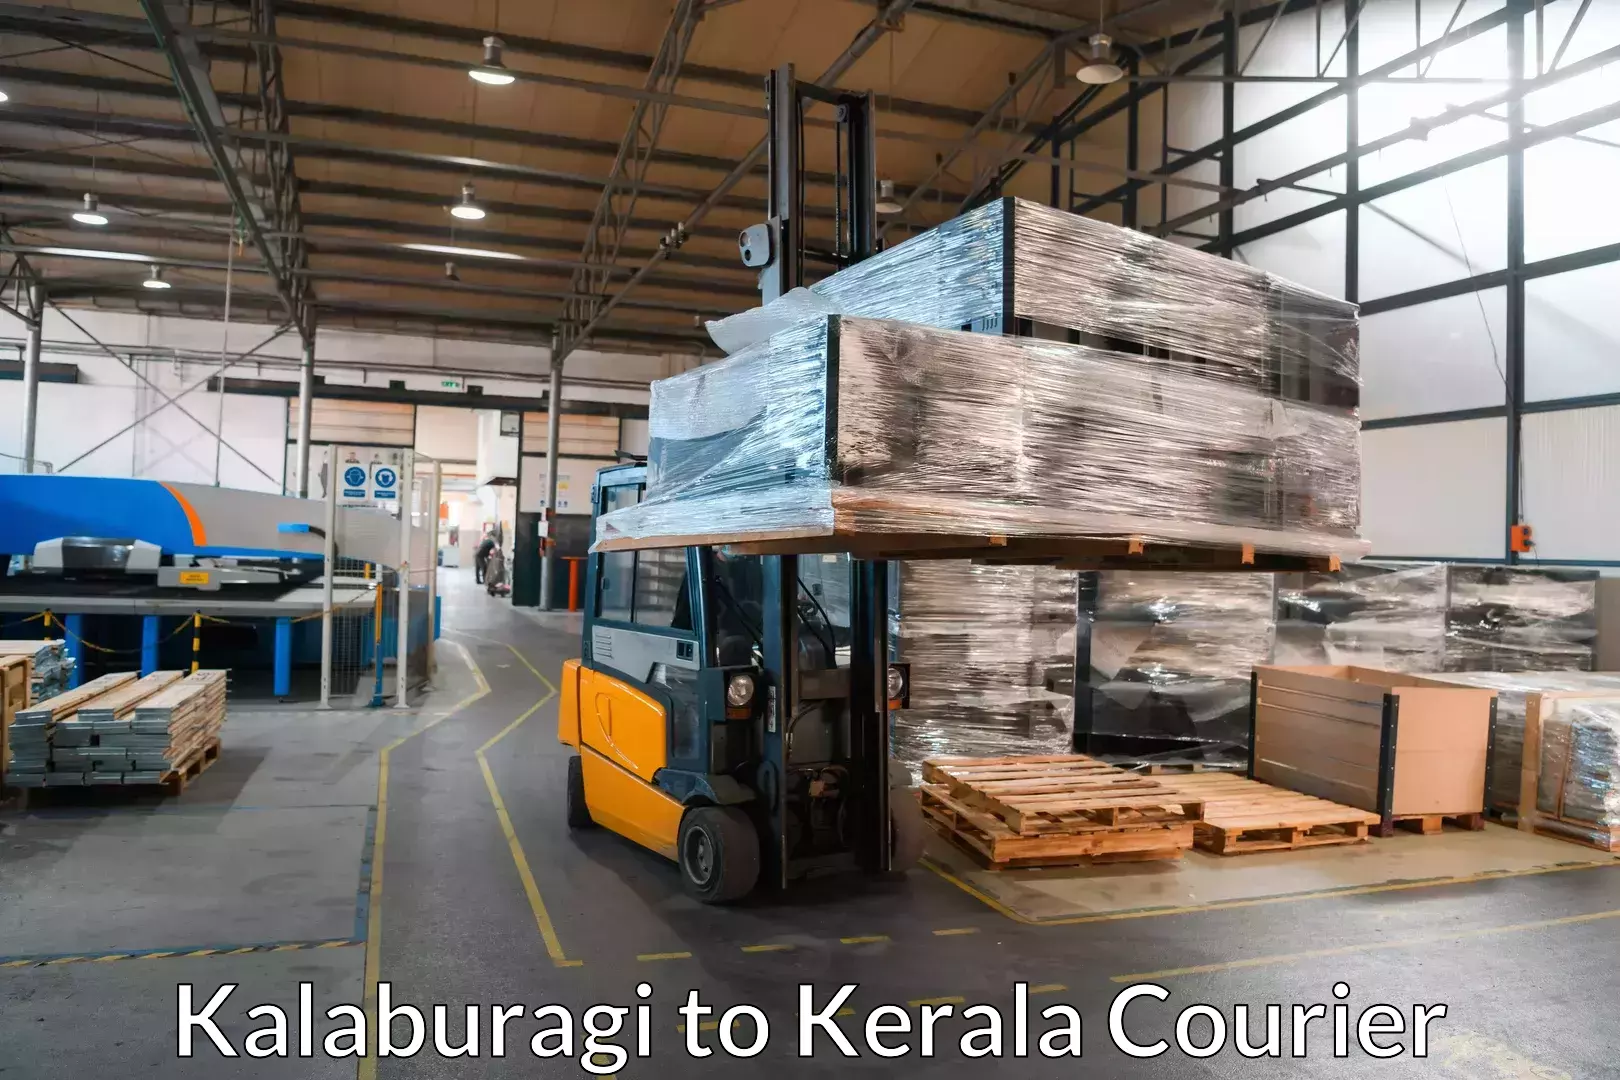 Seamless moving process Kalaburagi to Kerala